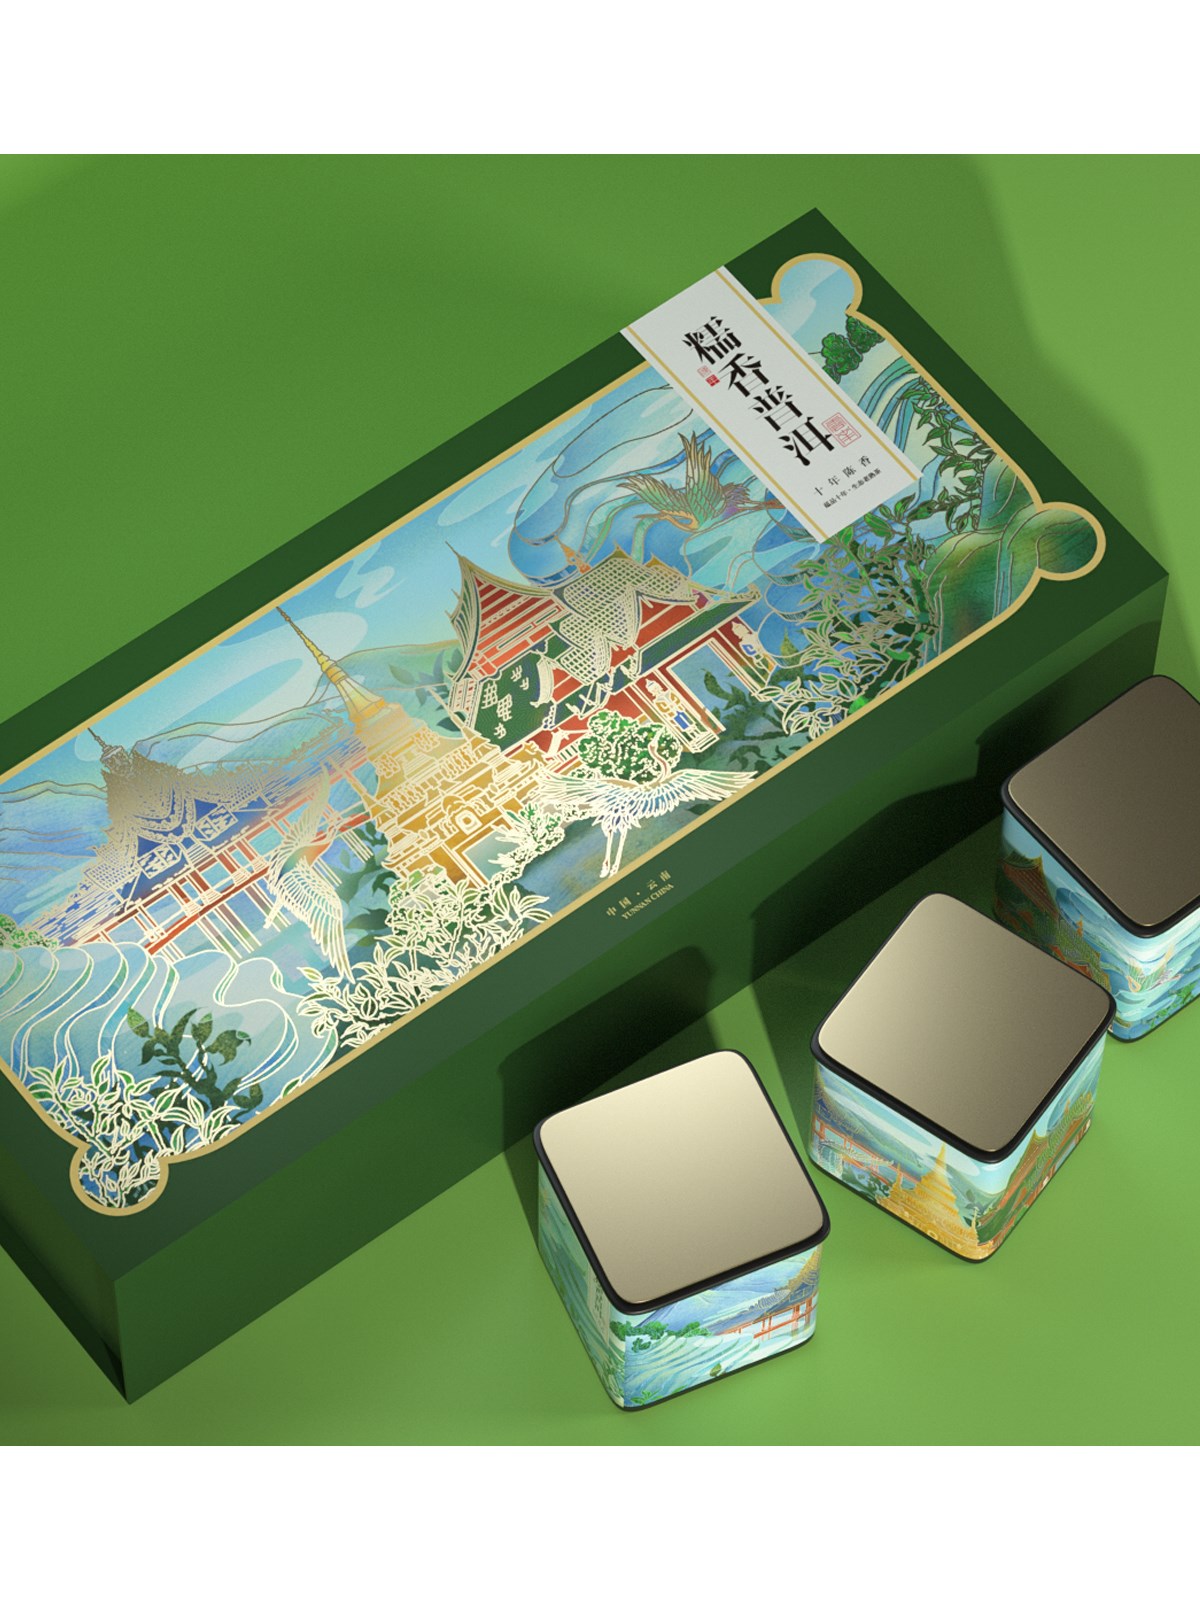 缥缈云海间，最美是茶山—普洱茶礼盒包装设计